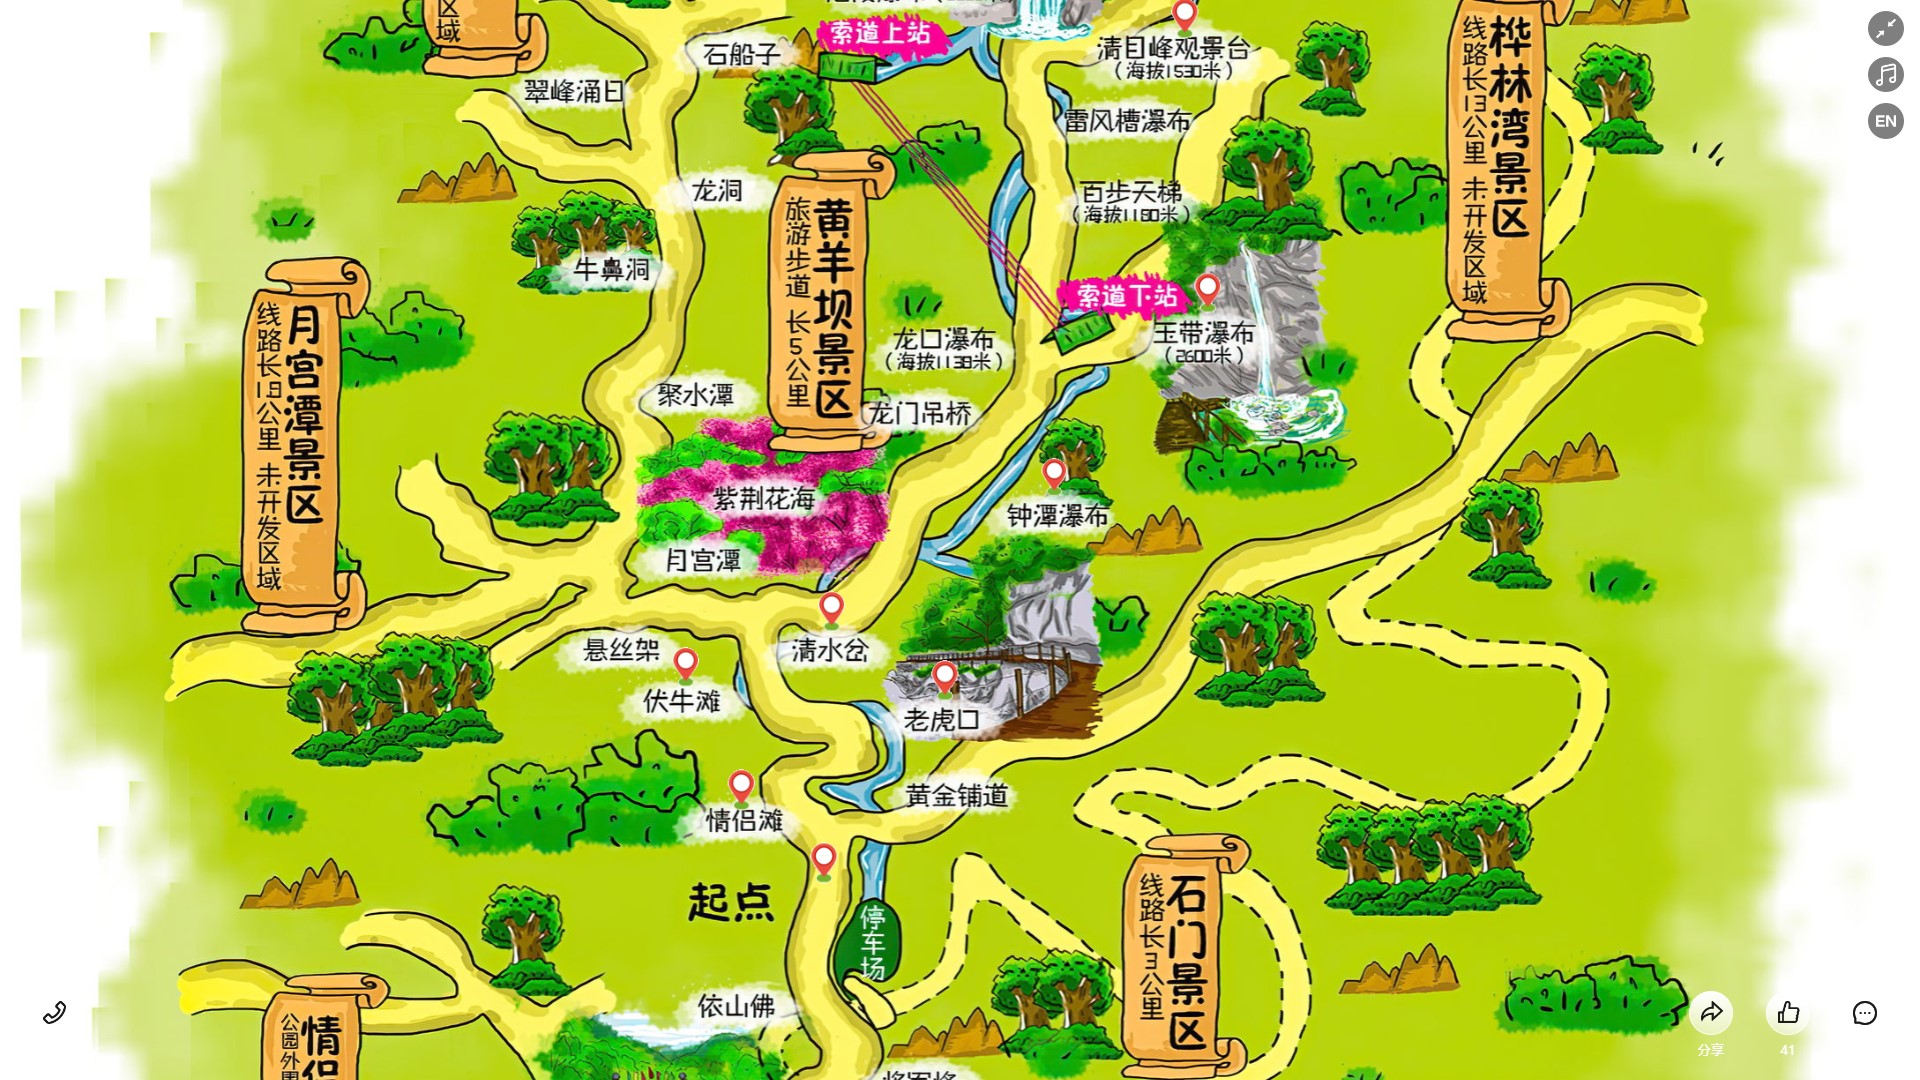 黄竹镇景区导览系统